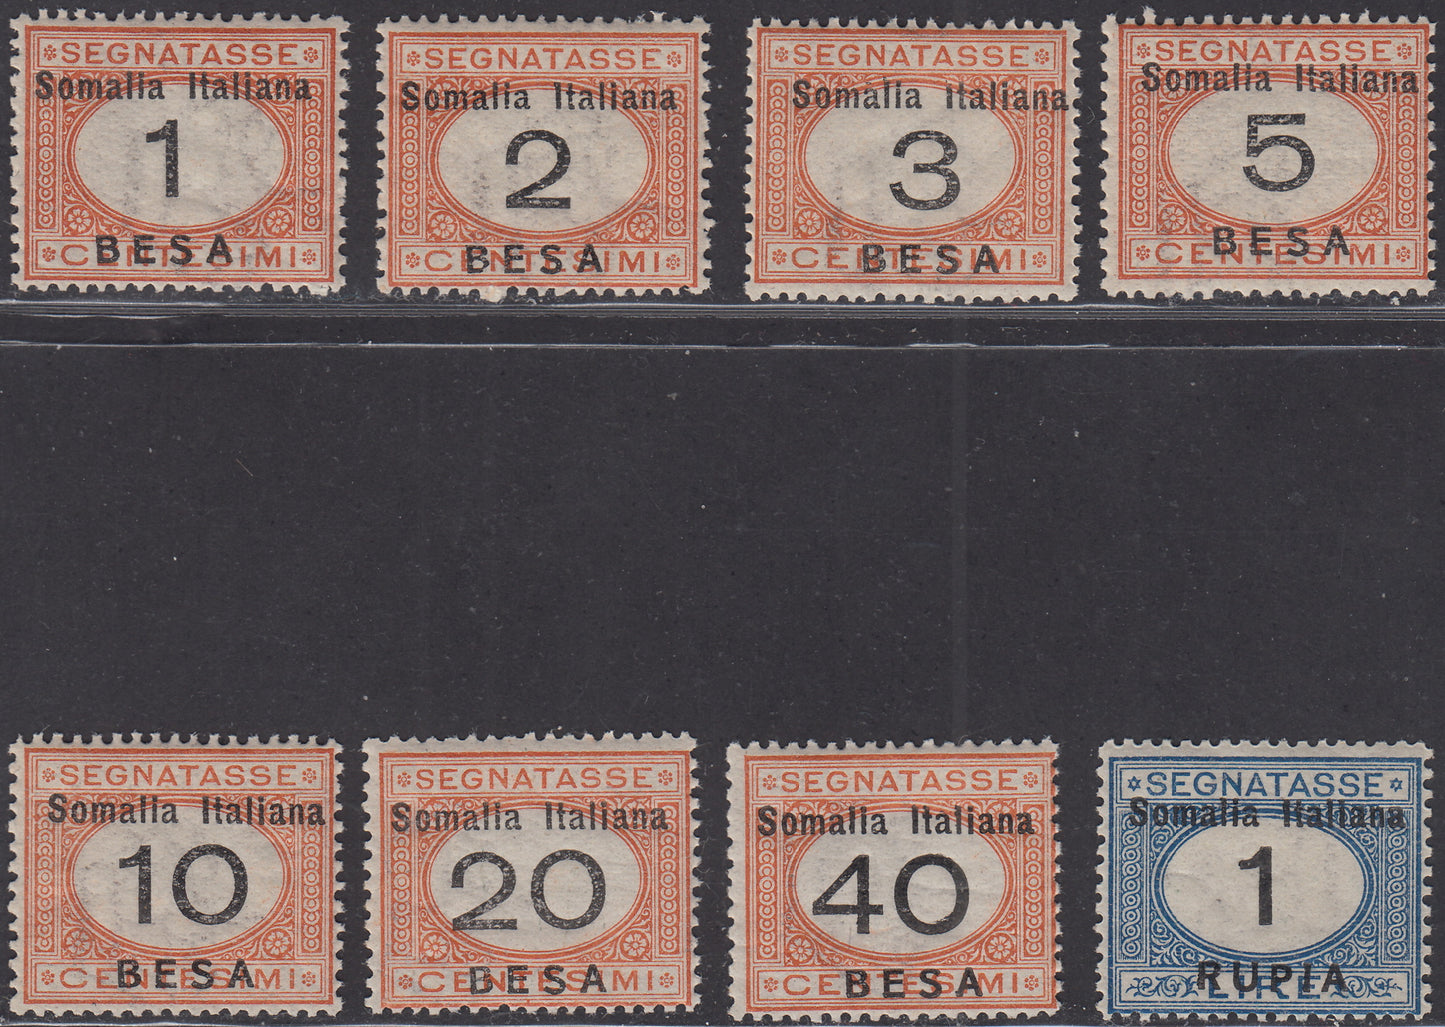 SOM38 - 1923 - Segnatasse di Regno soprastampate SOMALIA ITALIANA e valore in Besa e Rupie serie completa nuova con gomma integra (33/40)